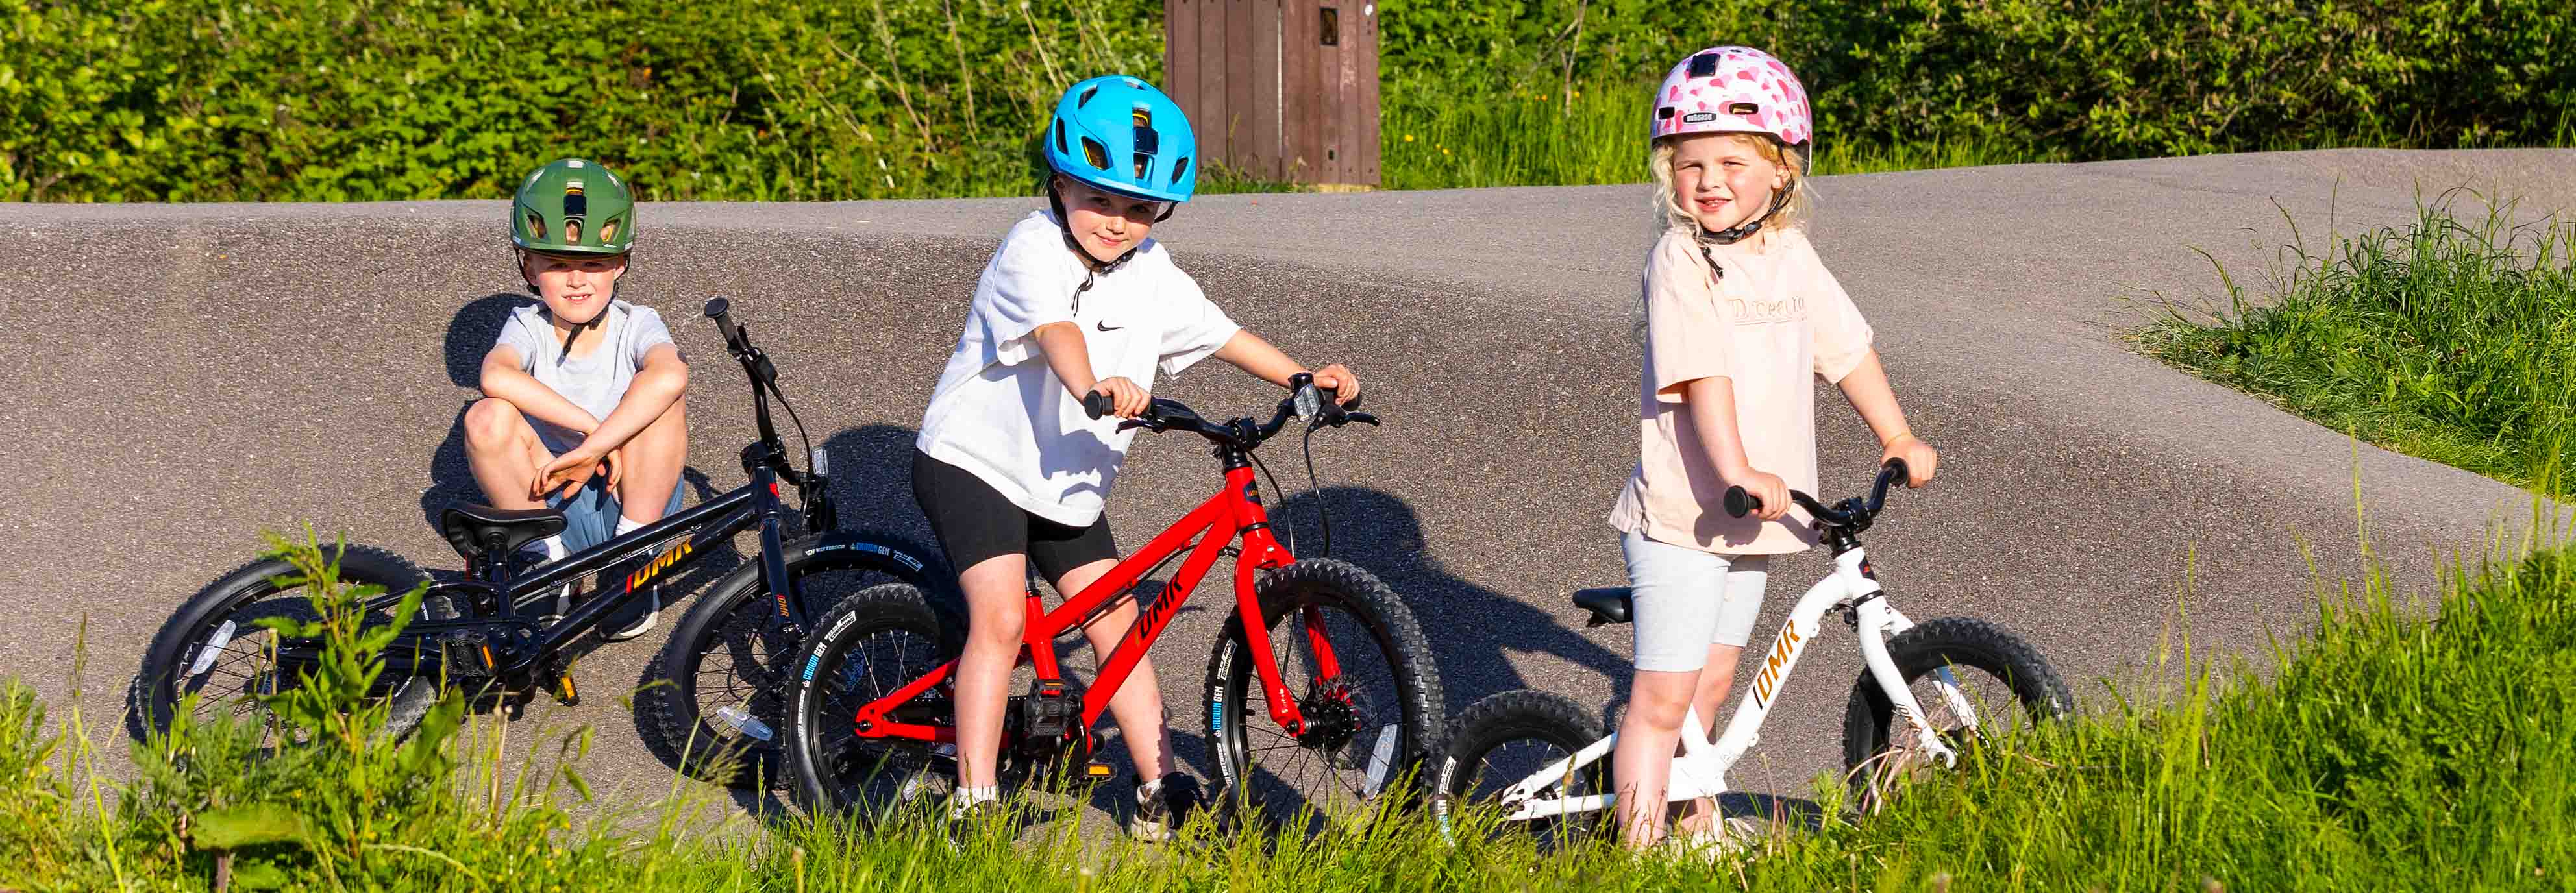 DMR Children's Bike - Pedal. 18